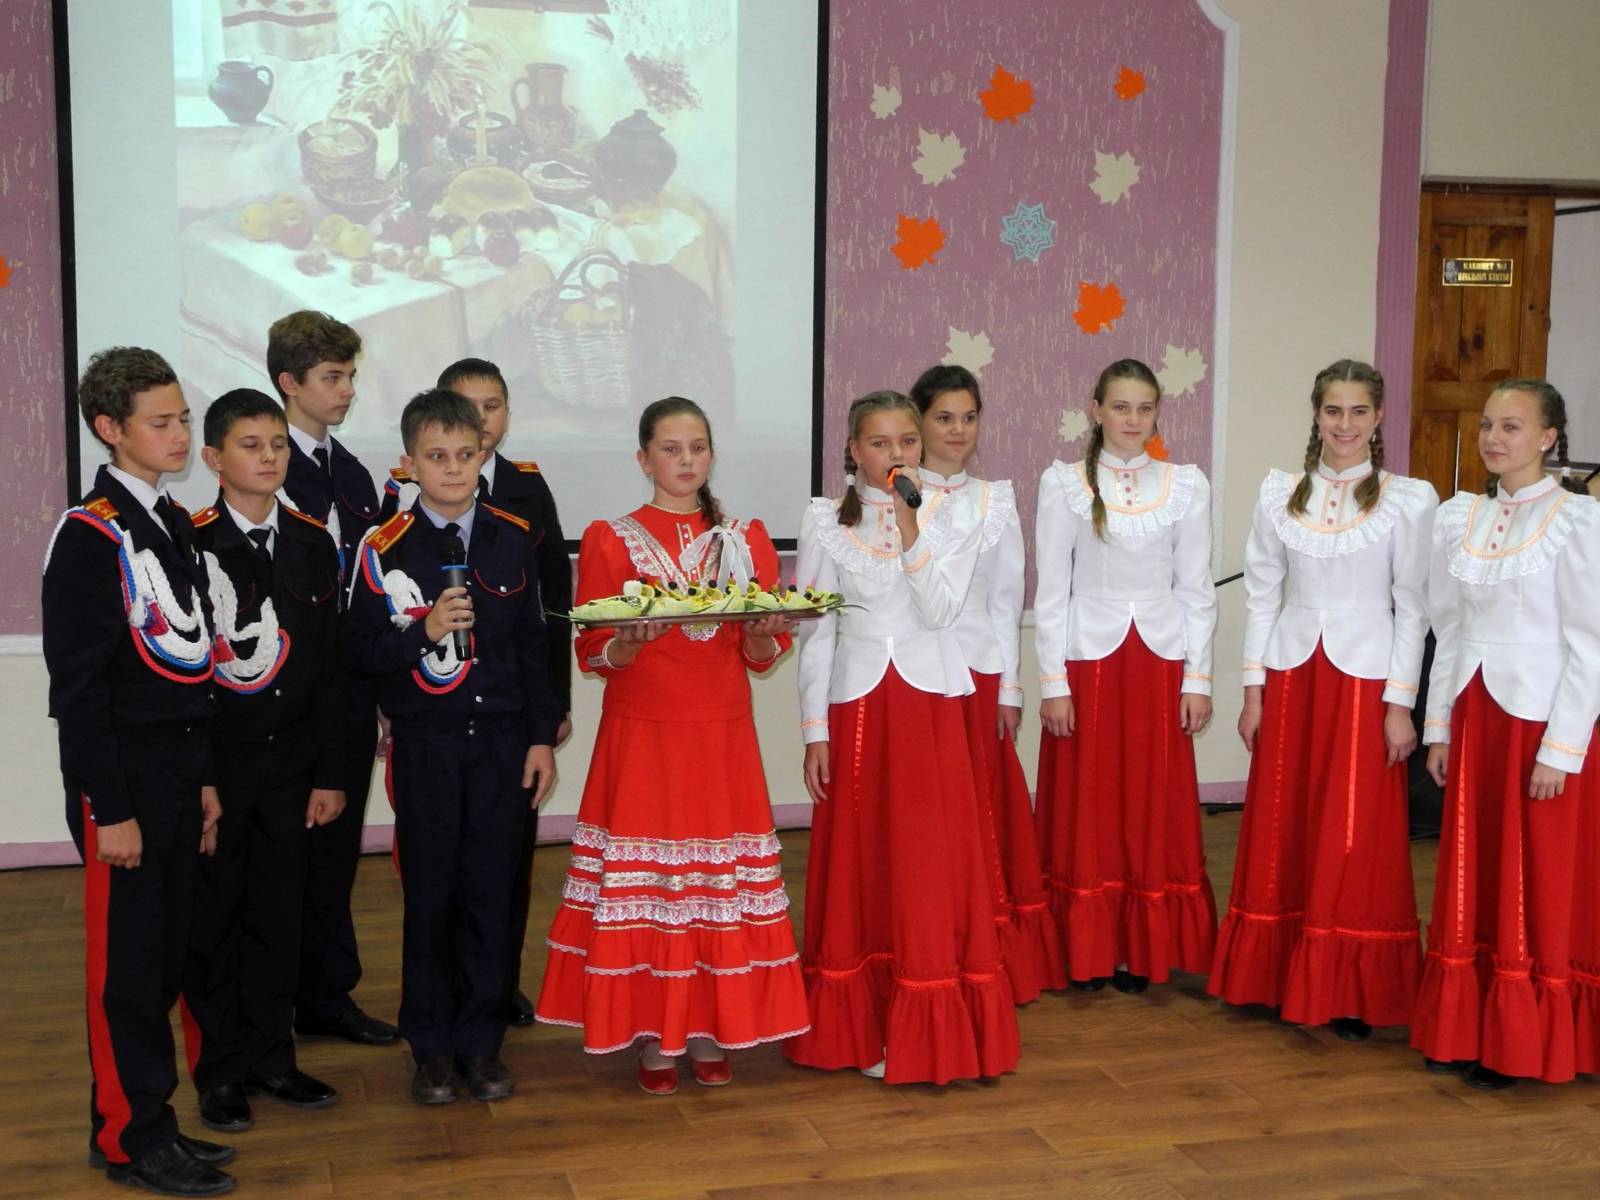 Праздник в честь Покрова Пресвятой Богородицы в школе №6 г. Урюпинска.